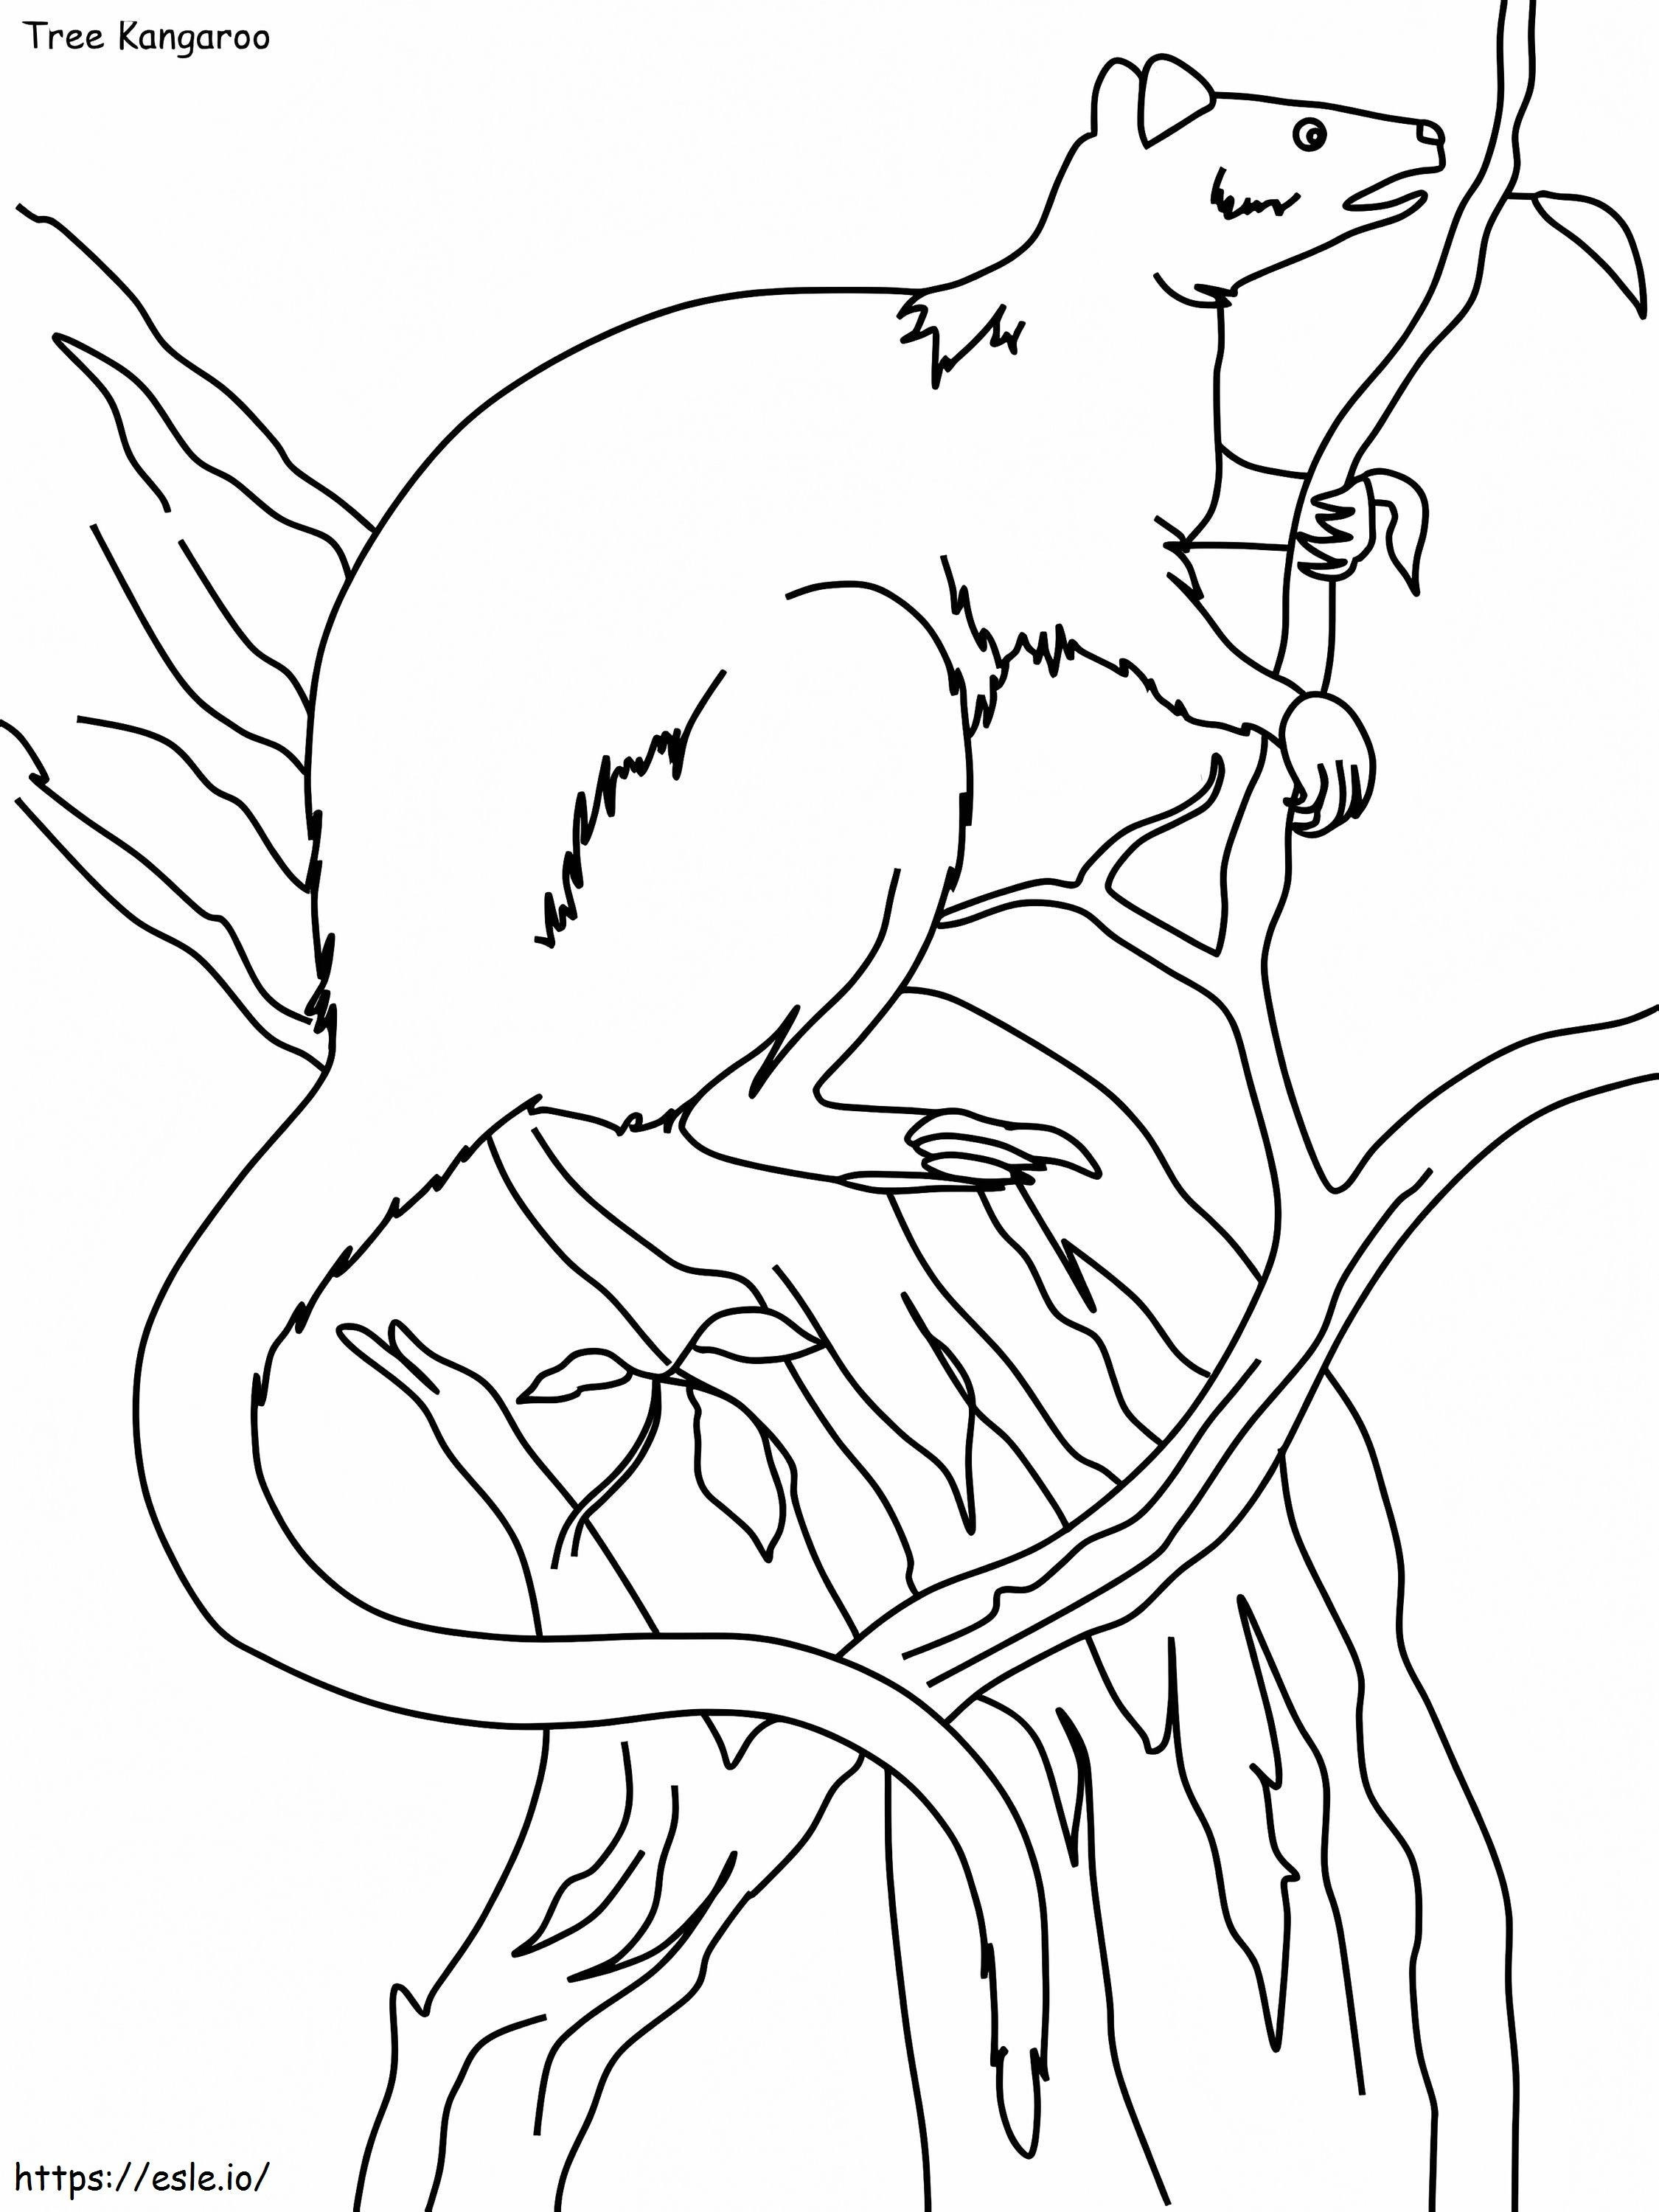 Free Tree Kangaroo coloring page